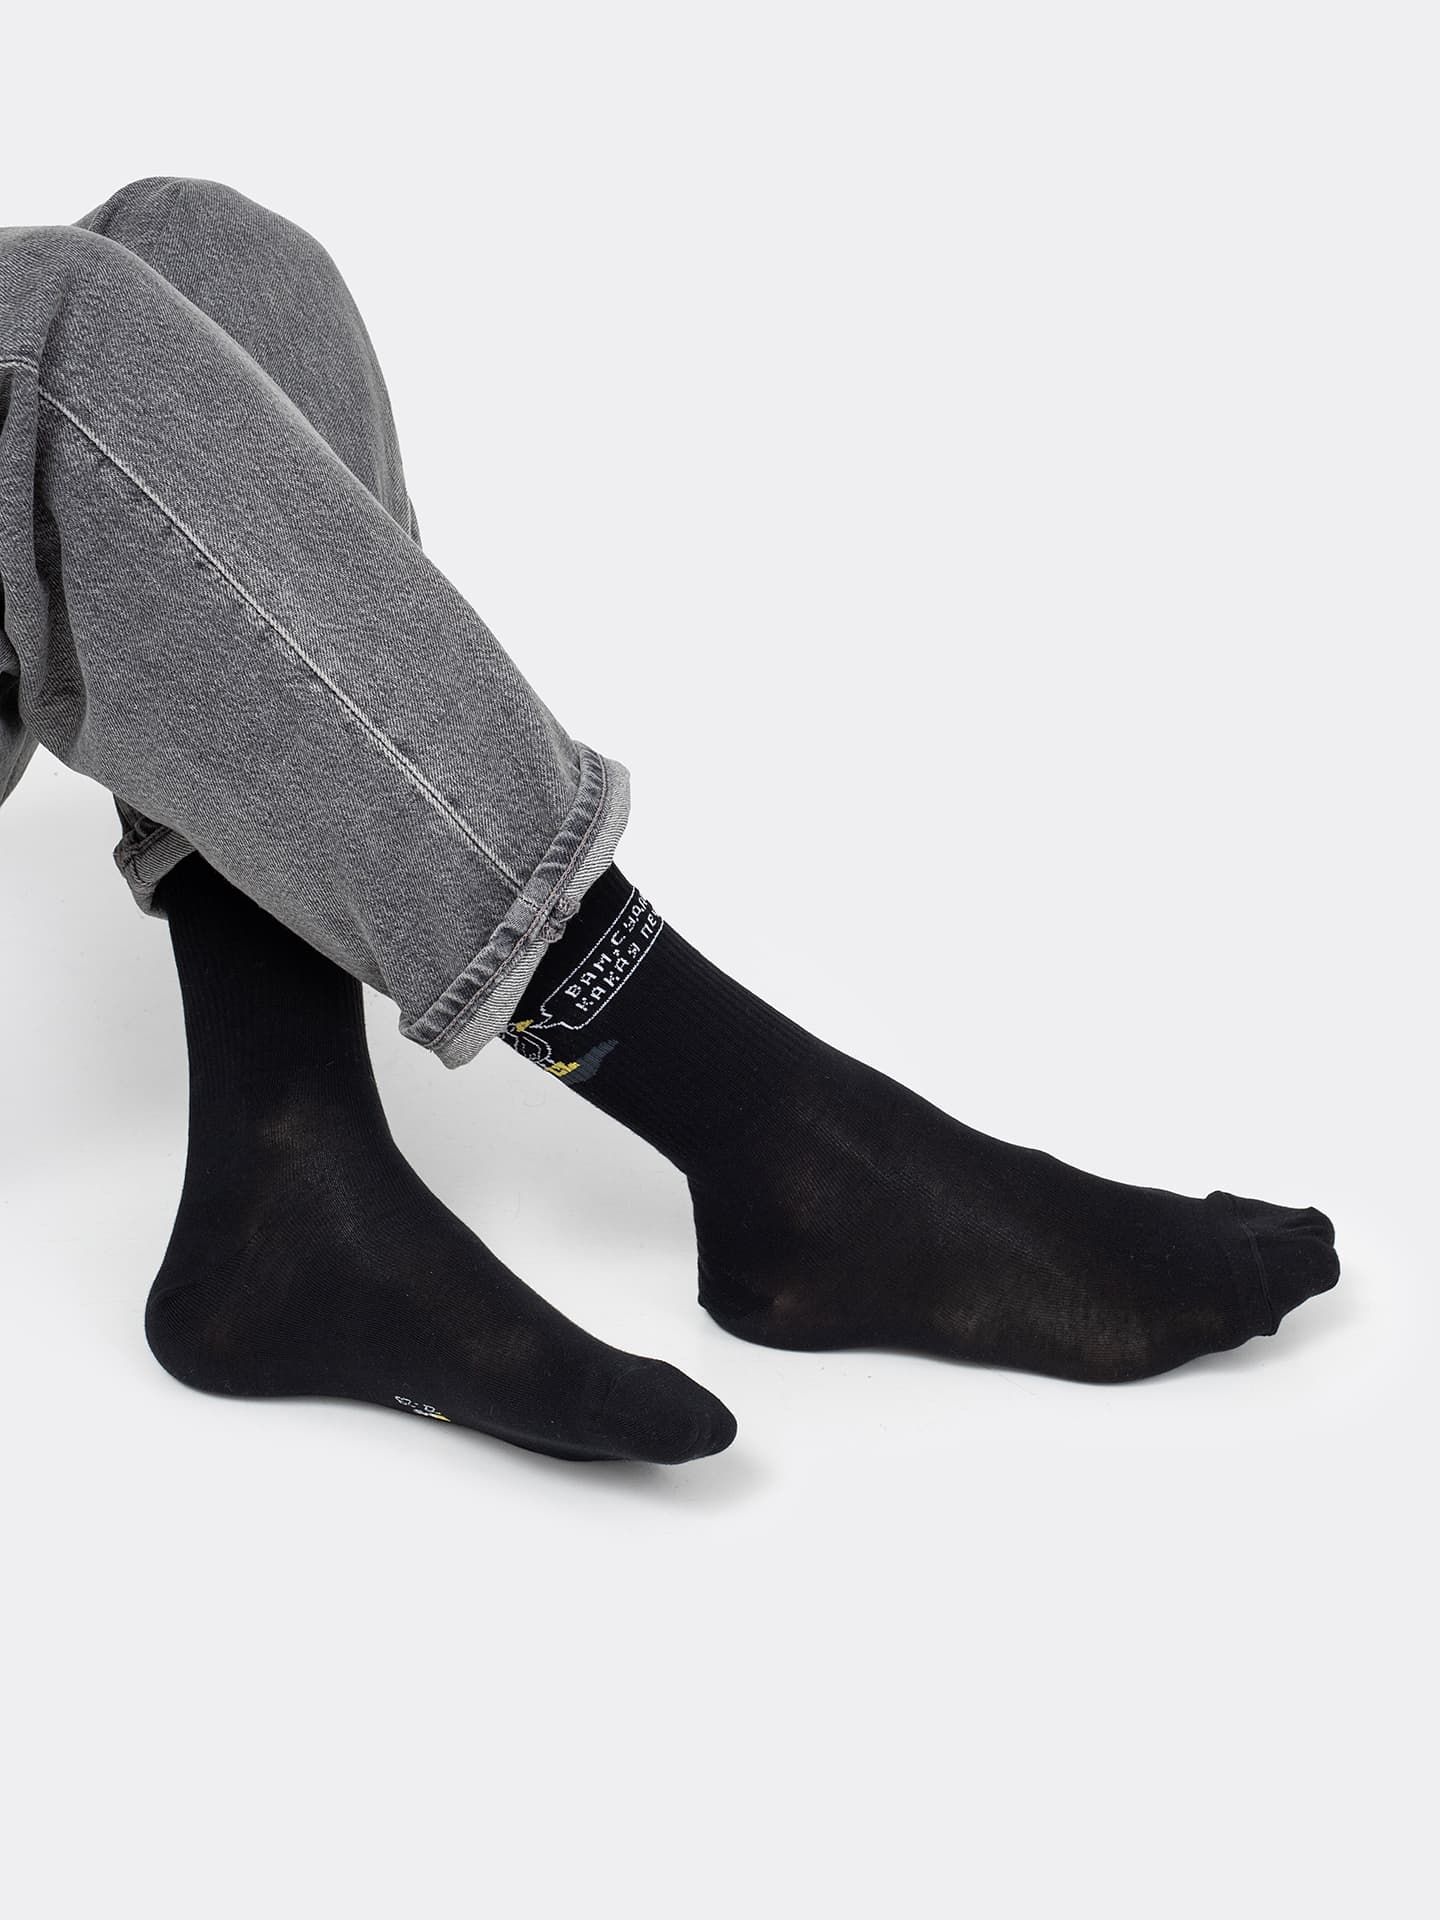 Высокие носки унисекс черного цвета с принтом на петербургскую тематику